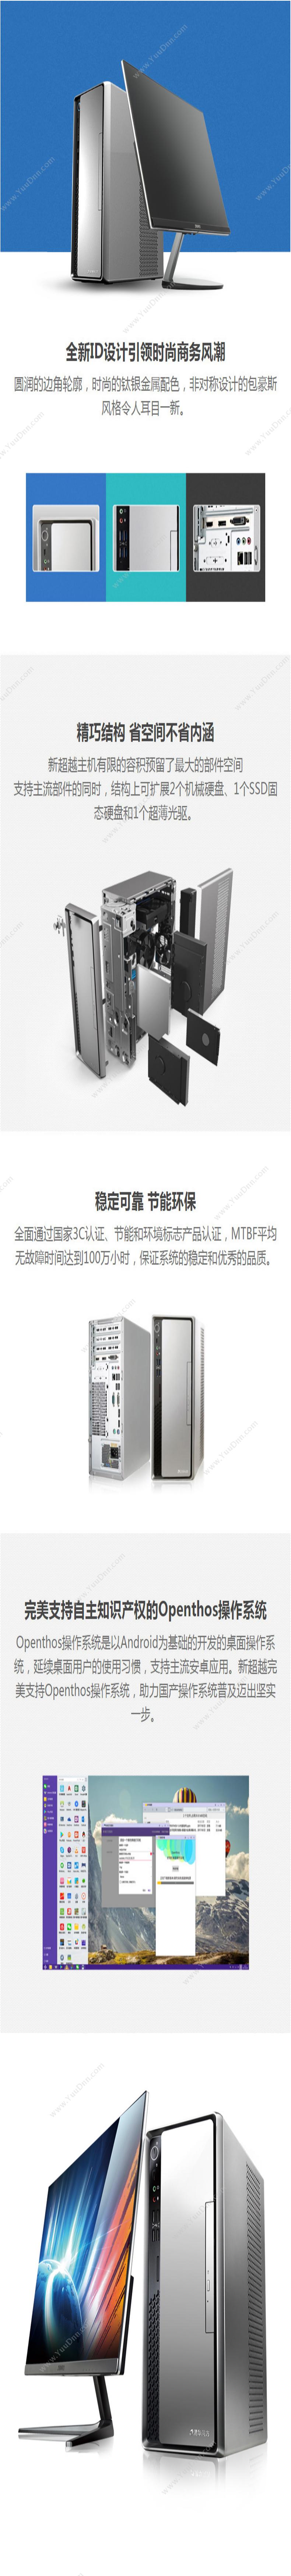 清华同方 TongFang 超越E500-63561(19.53寸显示器） 台式机 台式电脑套机